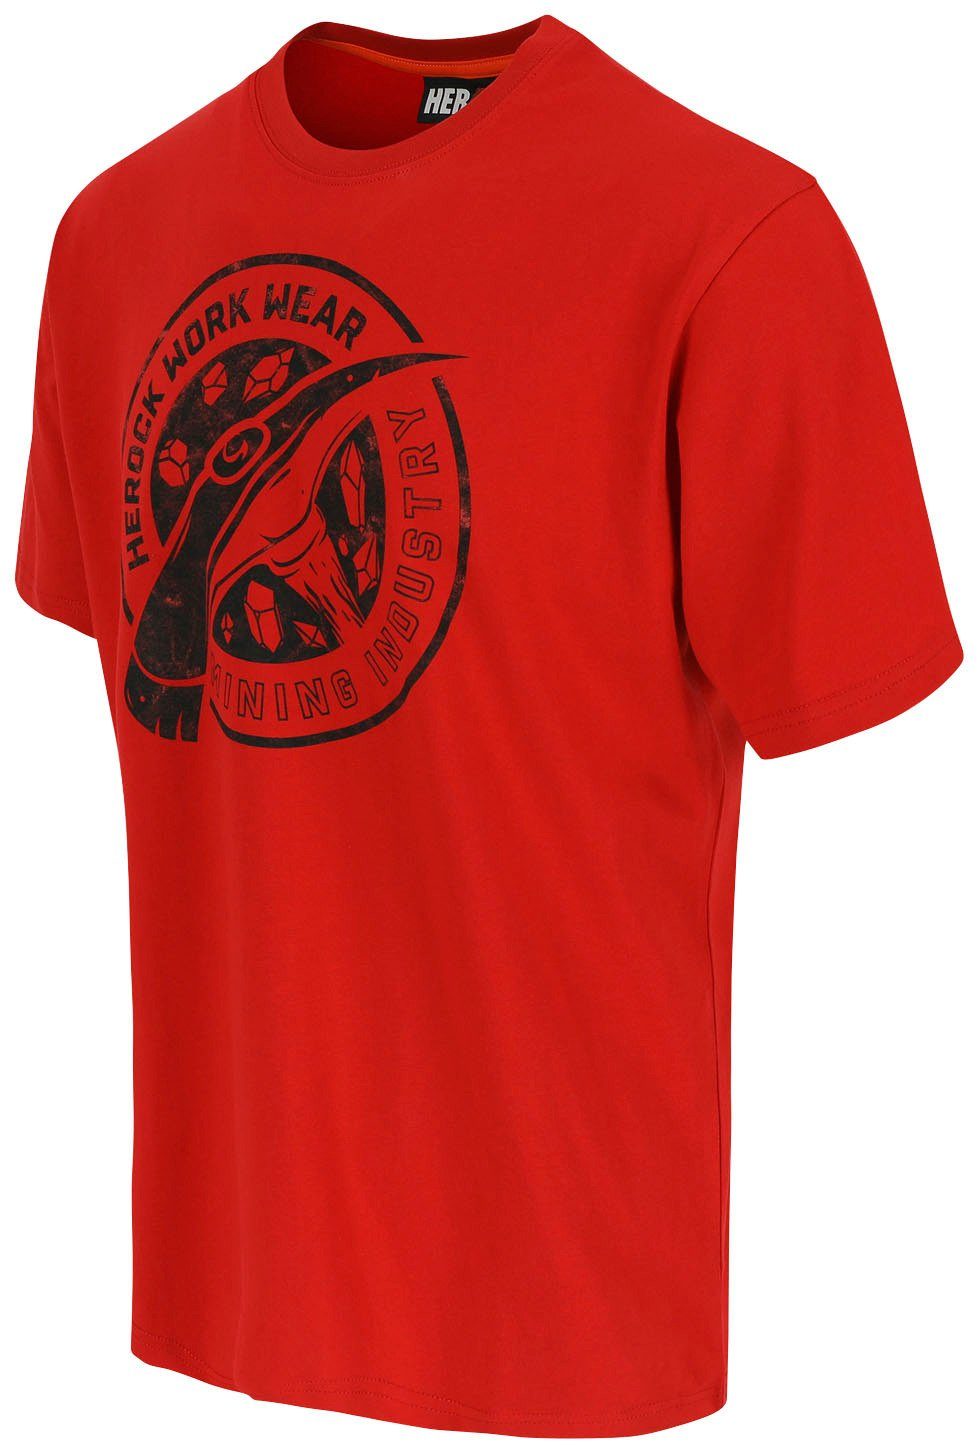 erhältlich verschiedene in Farben Herock Limited rot Edition, Worker T-Shirt